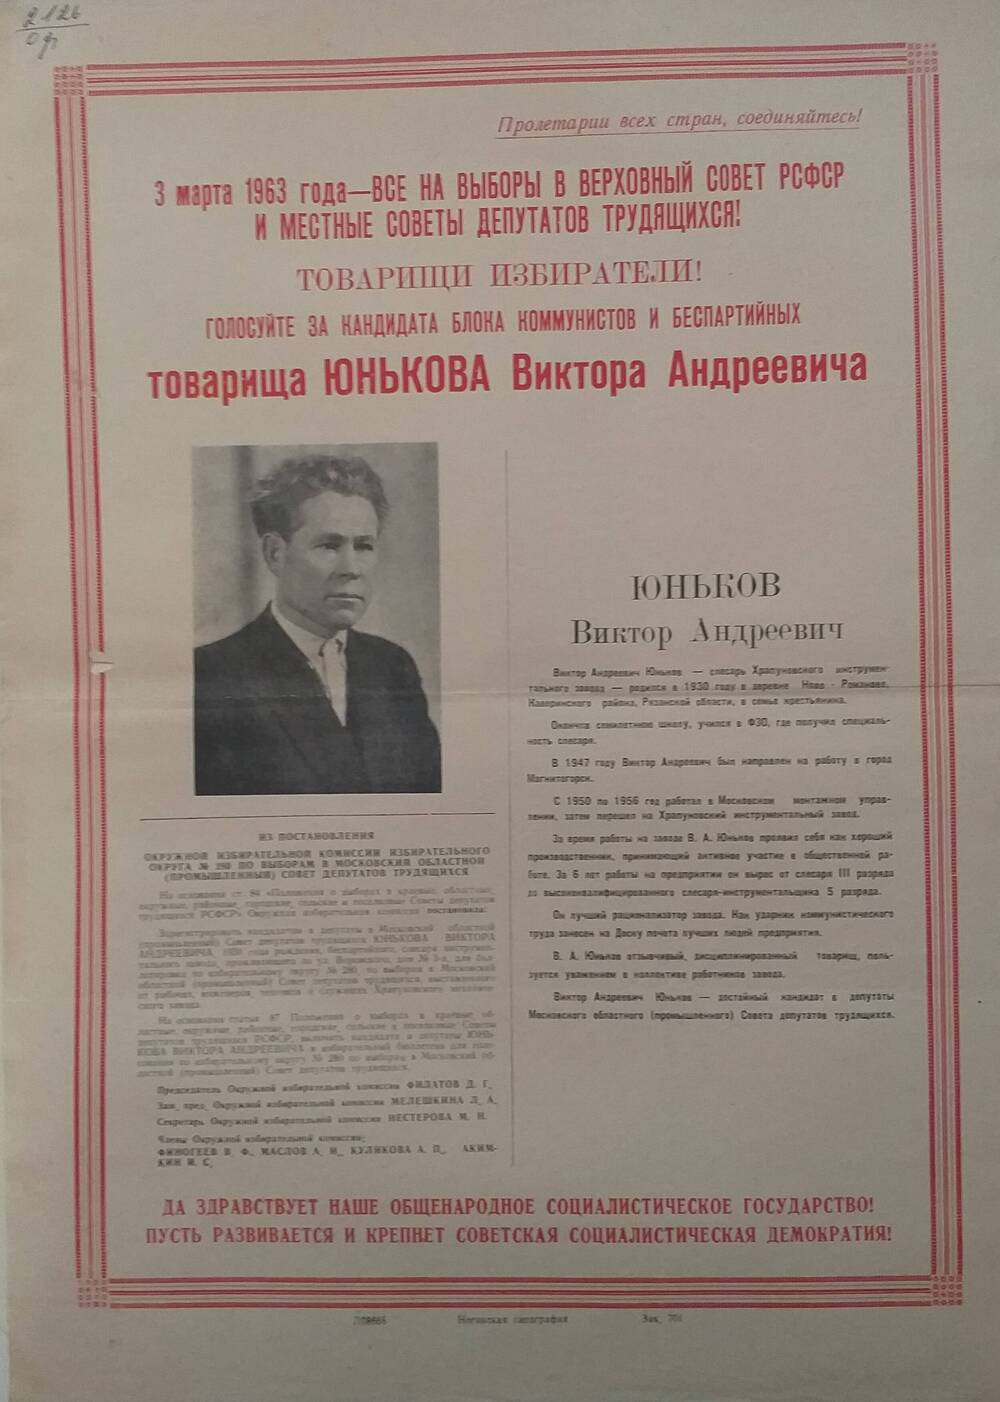 Плакат Призыв к голосованию  на выборах 3 марта 1963 года за товарища Юнькова Виктора Андреевича - слесаря Храпуновского инструментального завода, 1963 год.